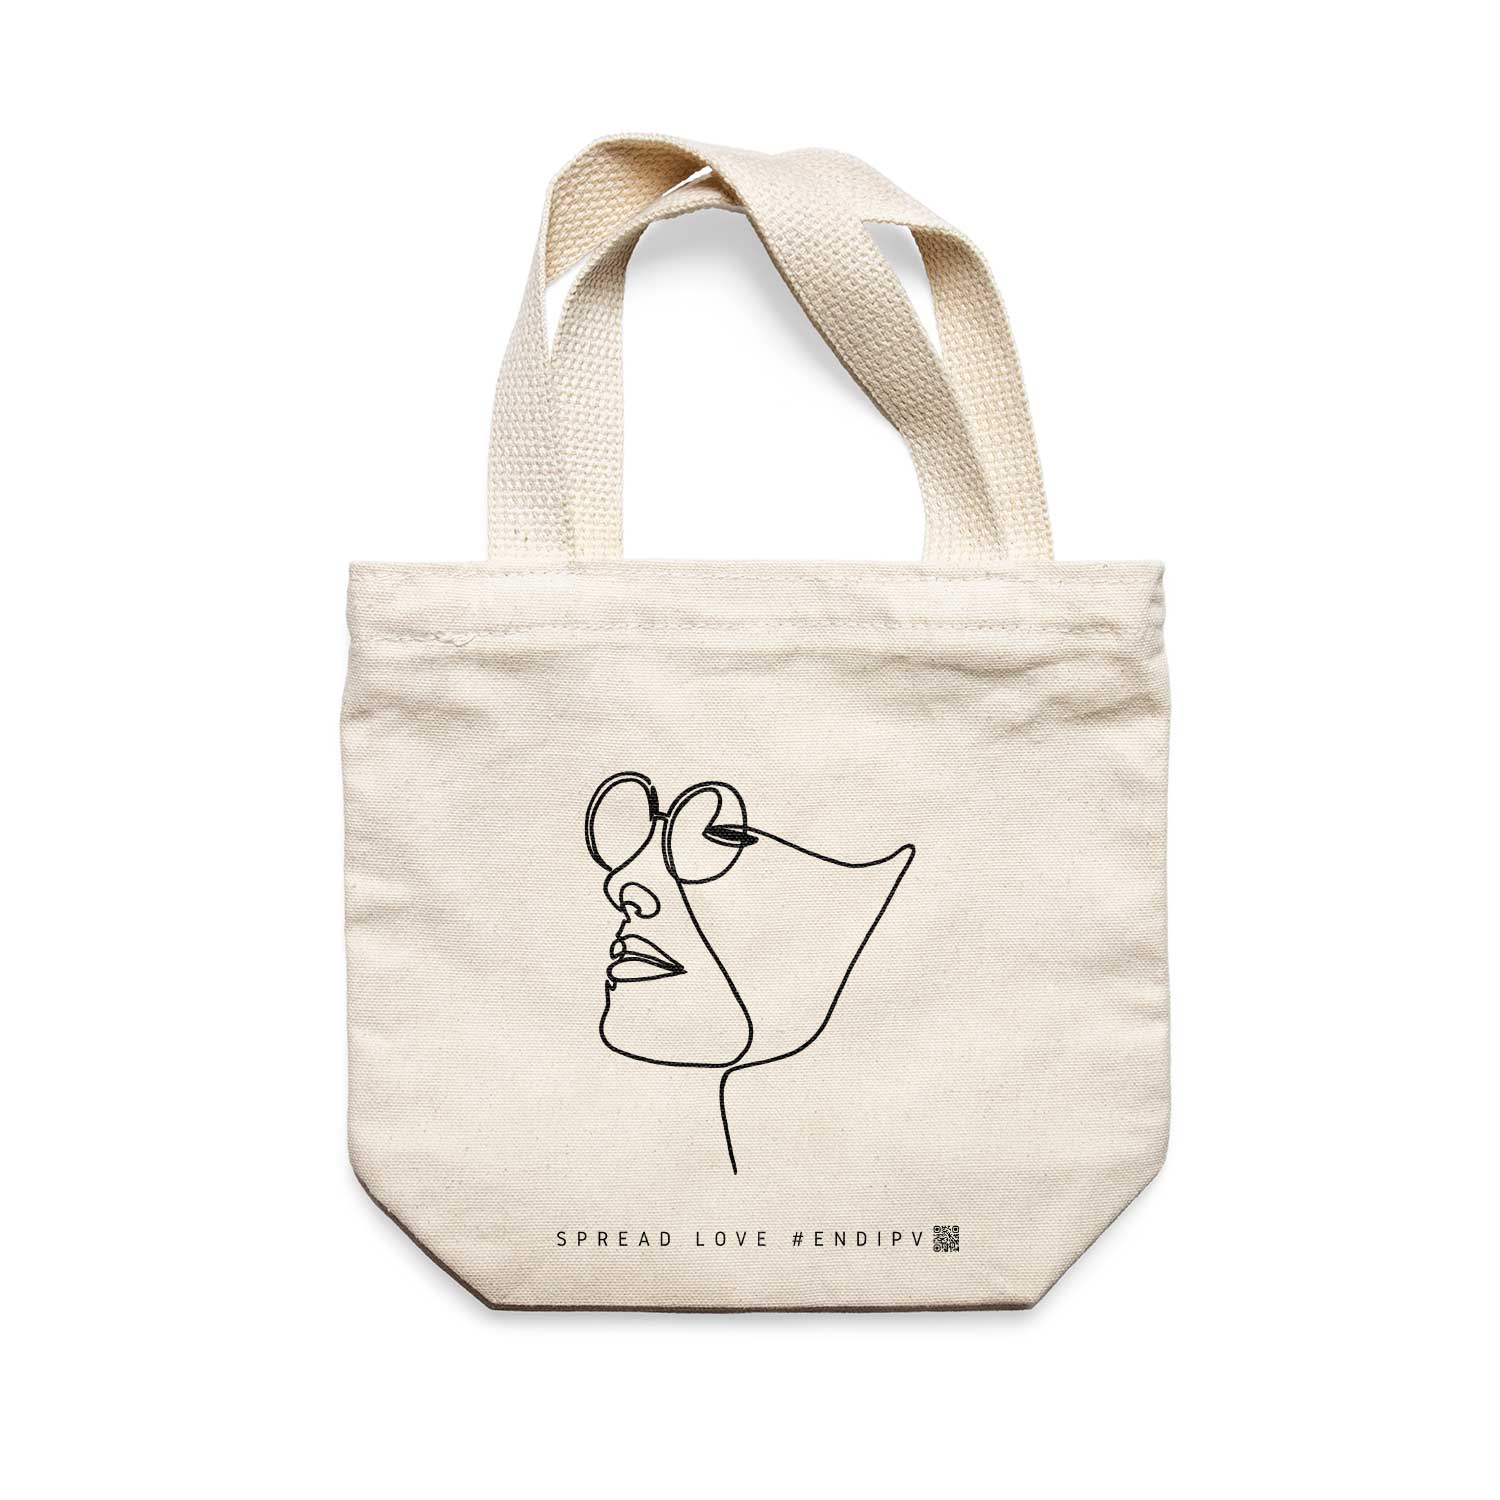 תיק צד לנשים וגברים מבד 100% כותנה טבעית בעיצוב One Line - Mi amor Tote Bag מציור מקורי של גאיה